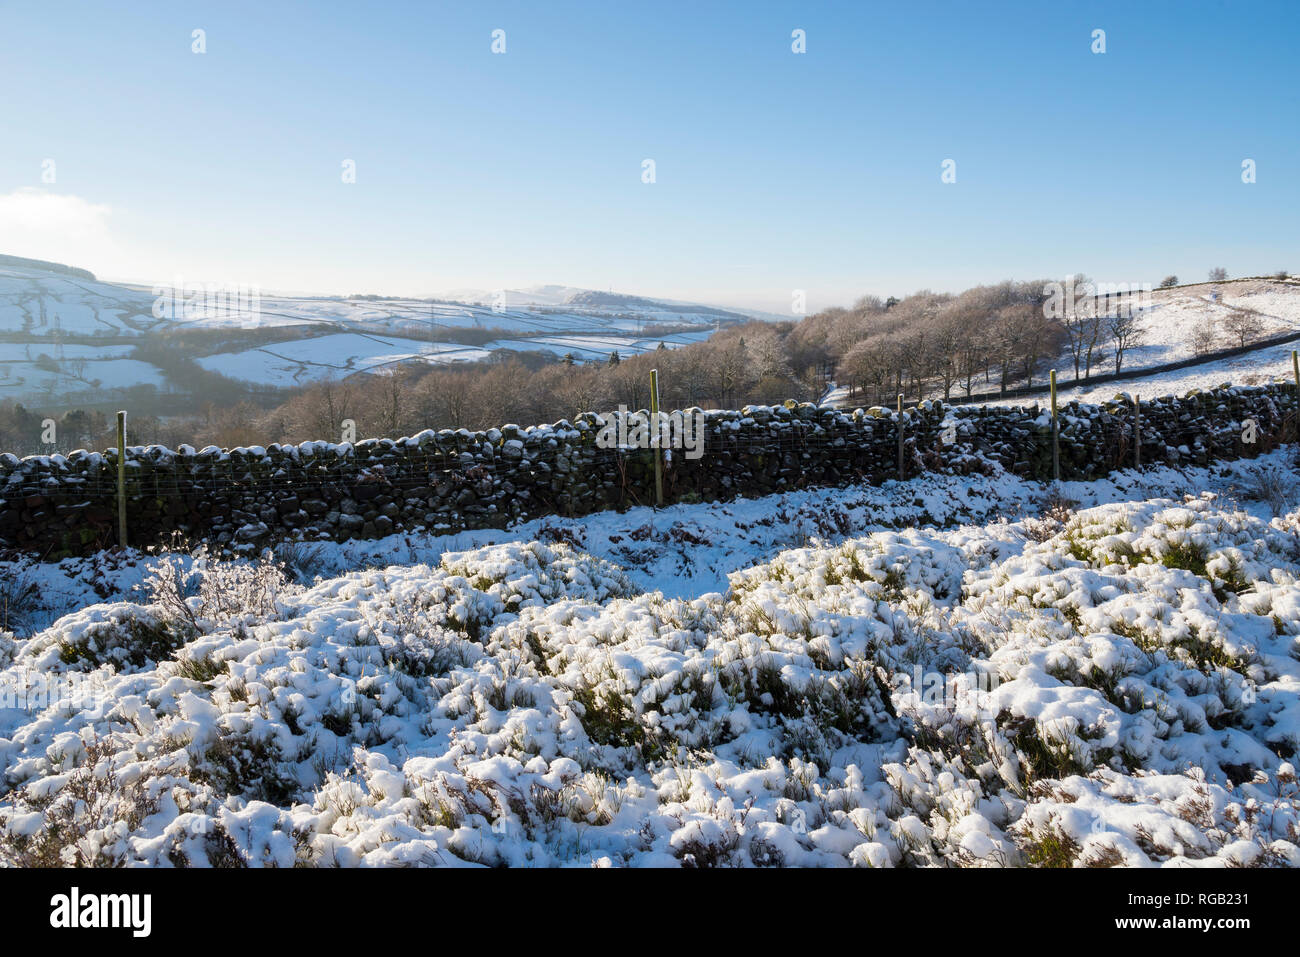 Paysage de neige en bordure de l'A628 Woodhead road dans les collines de Derbyshire, Angleterre. Banque D'Images